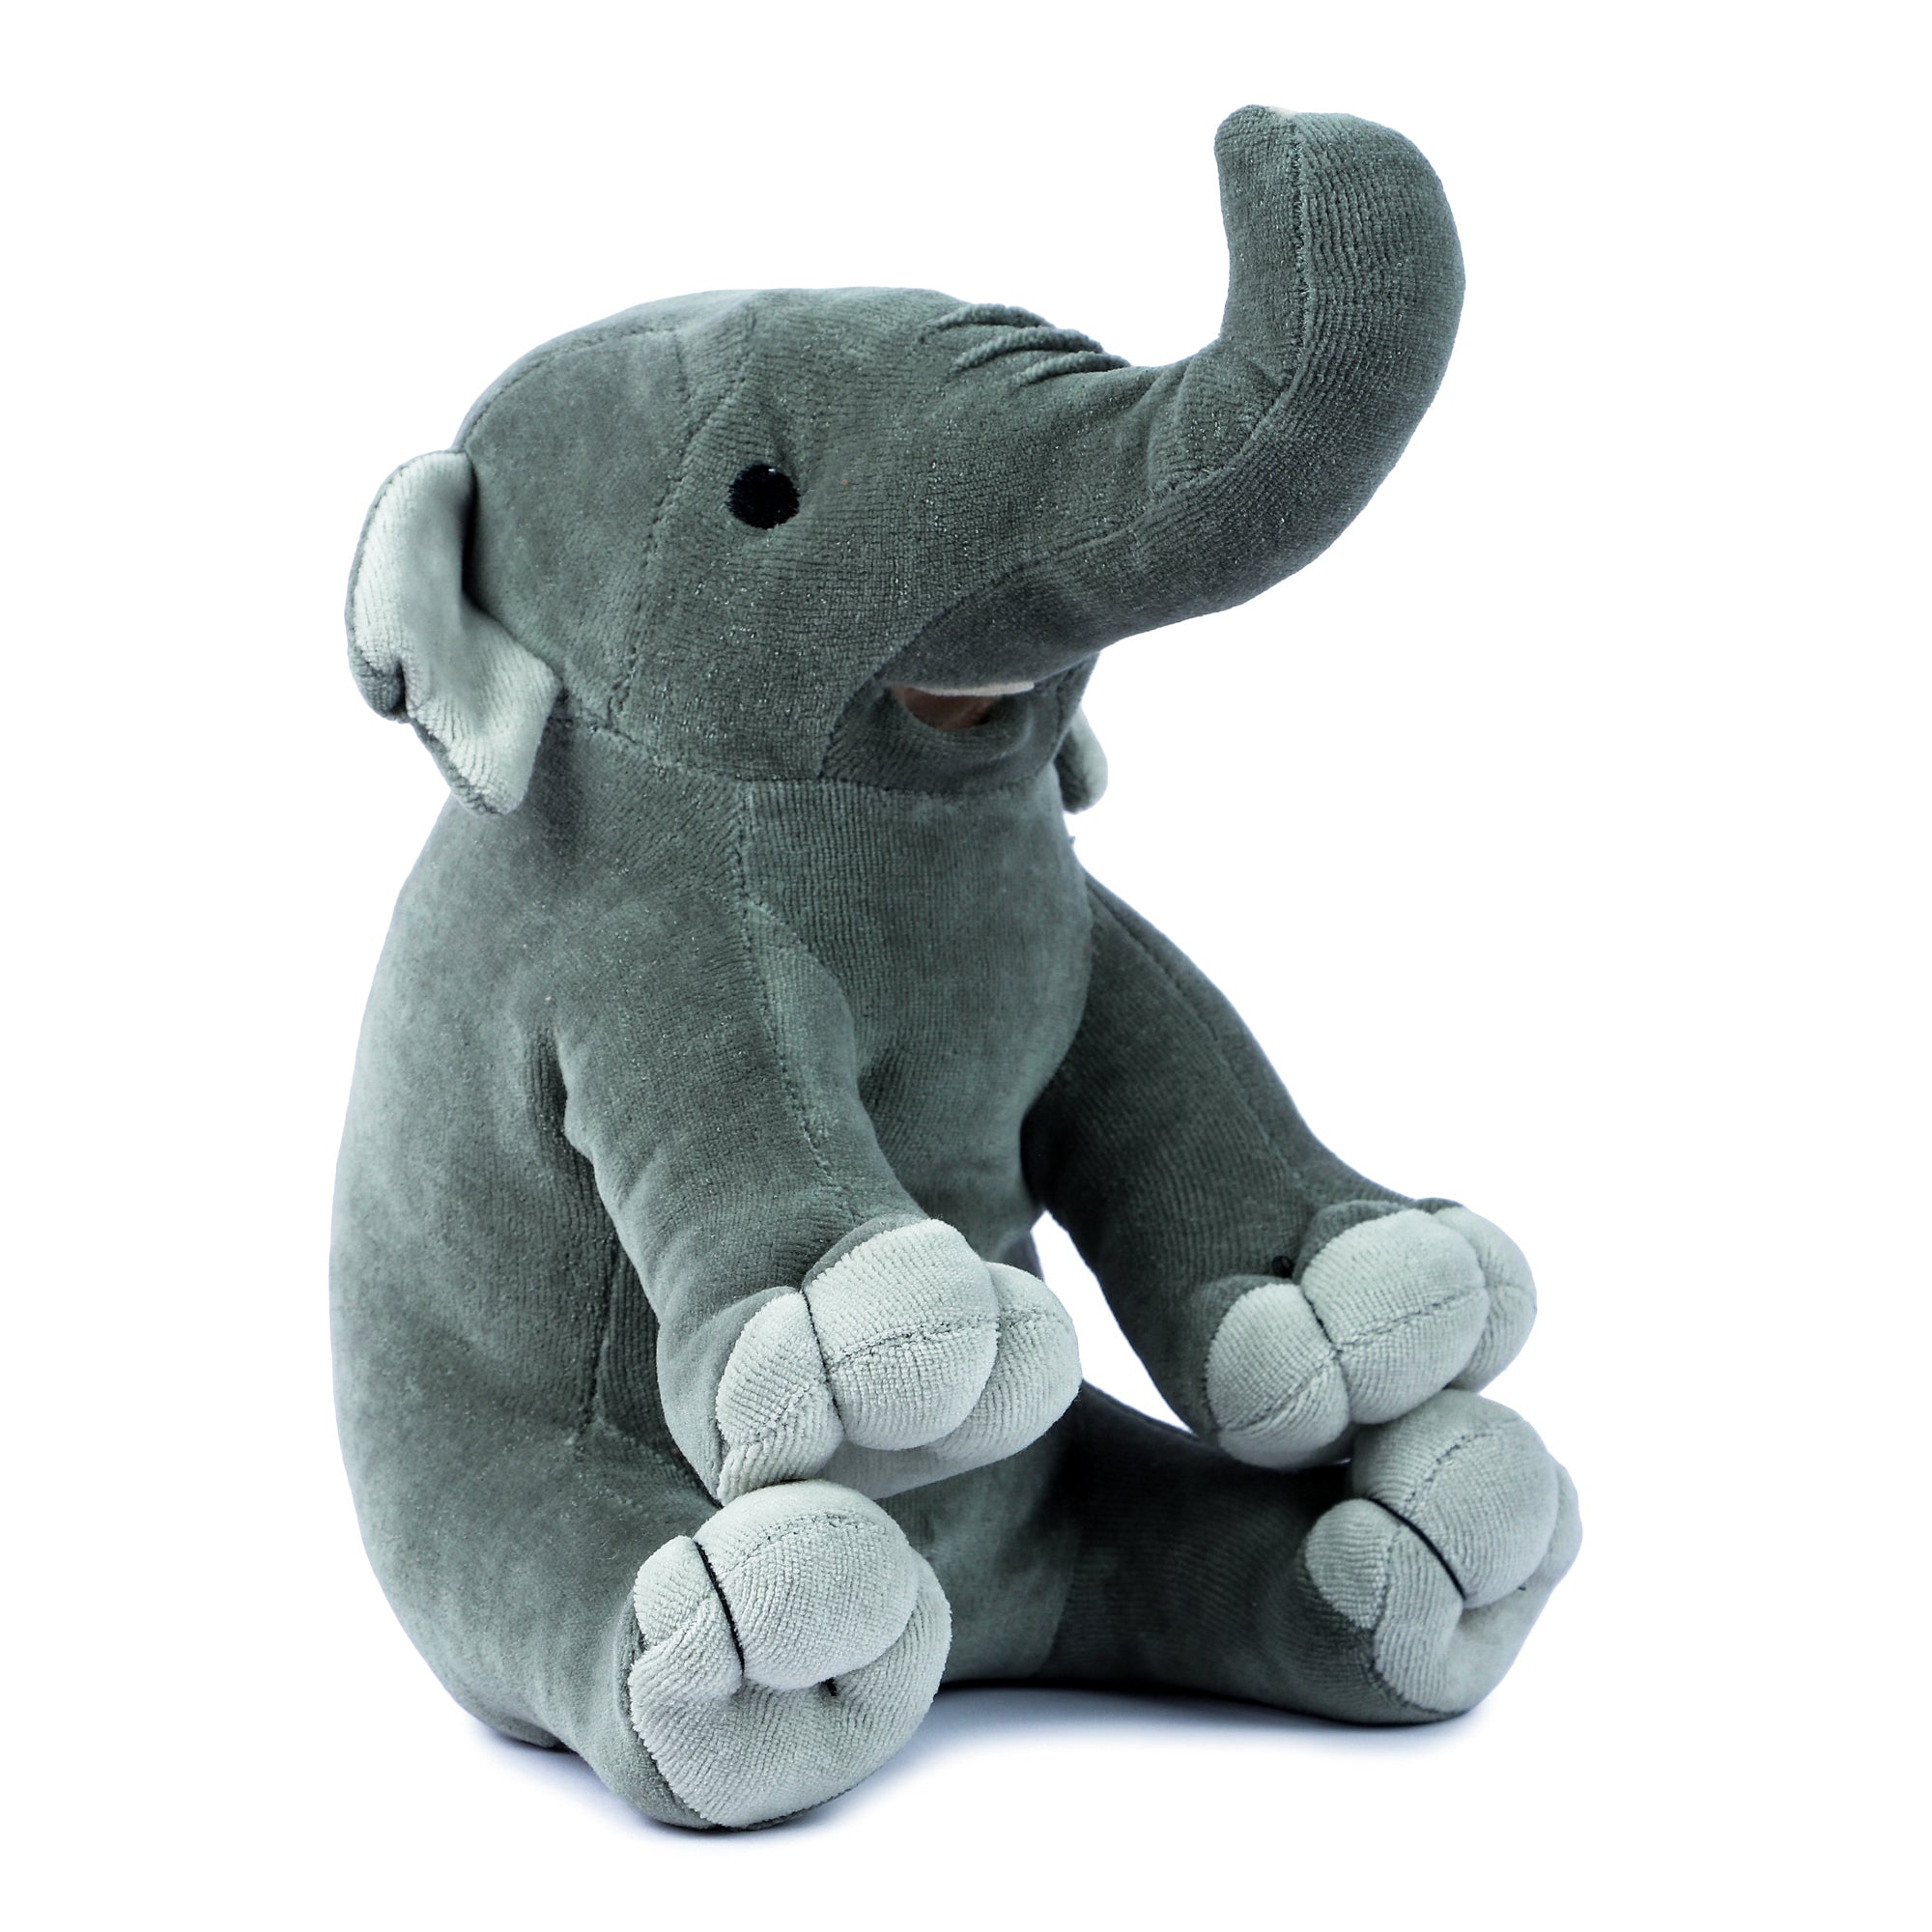 the elephant plush toy